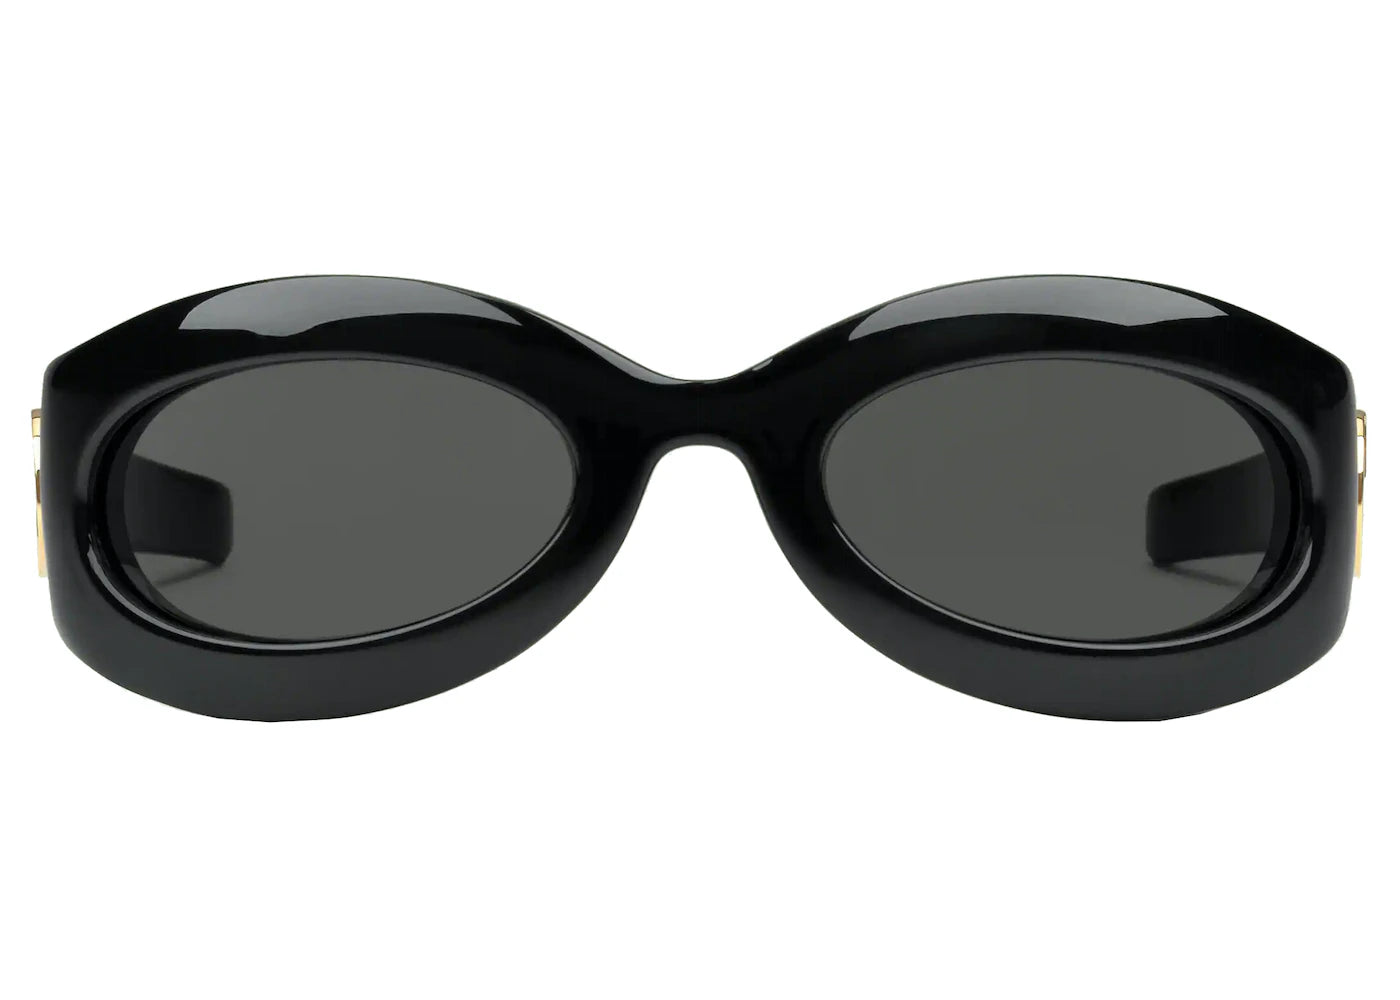 Gucci GG1247S Women’s Sunglasses Black